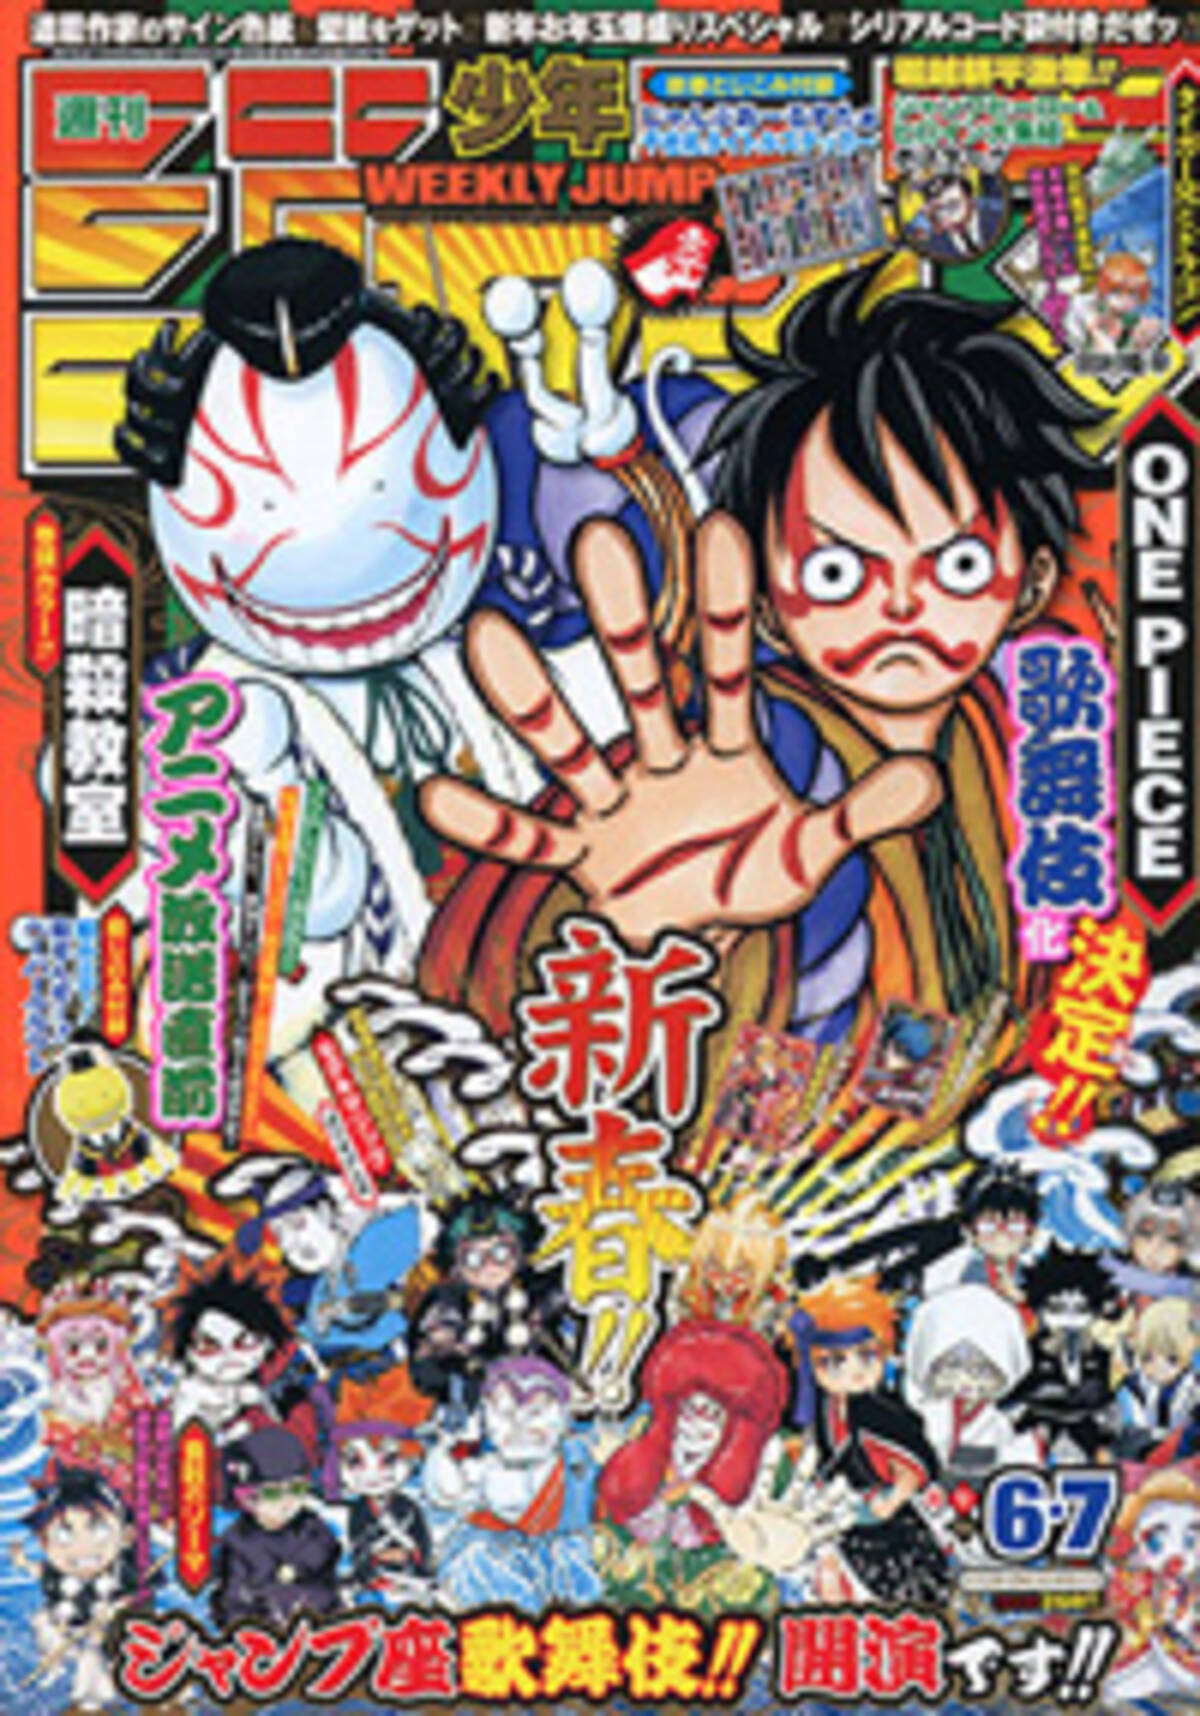 2 5次元ブームとは一味違う 週刊少年ジャンプ 表紙でも盛り上げる One Piece 歌舞伎化 15年1月5日 エキサイトニュース